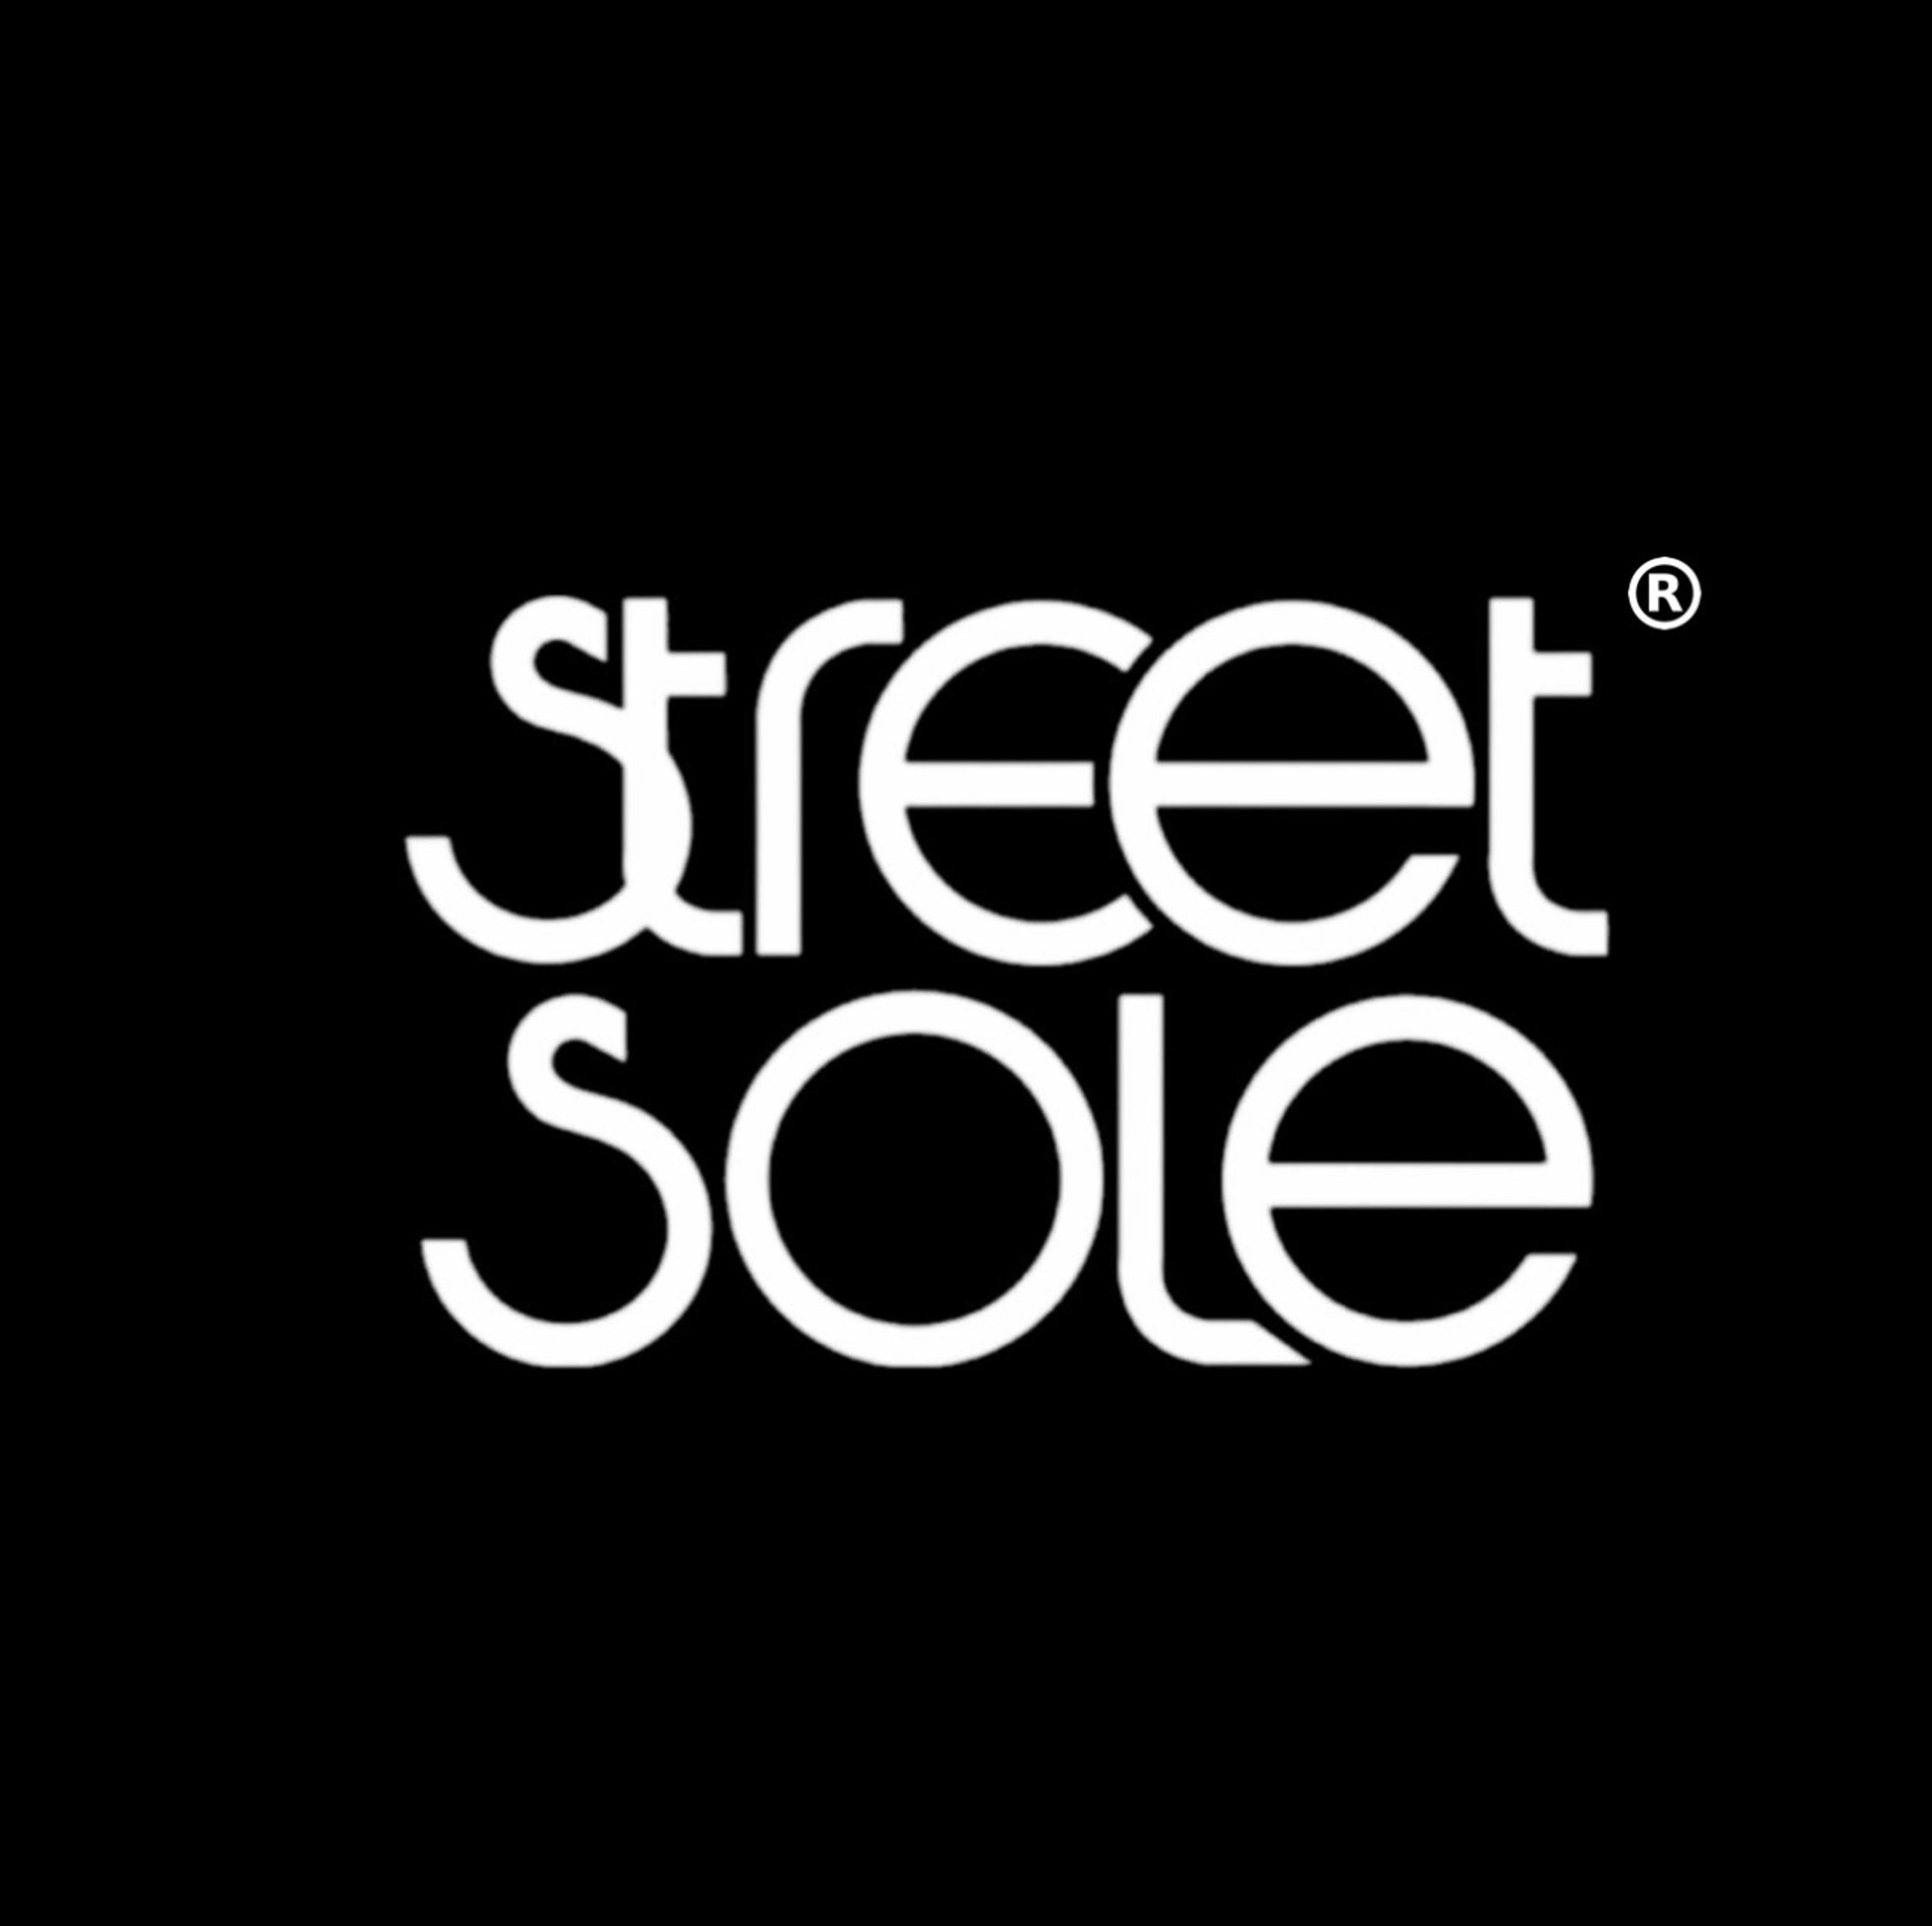 Street Sole